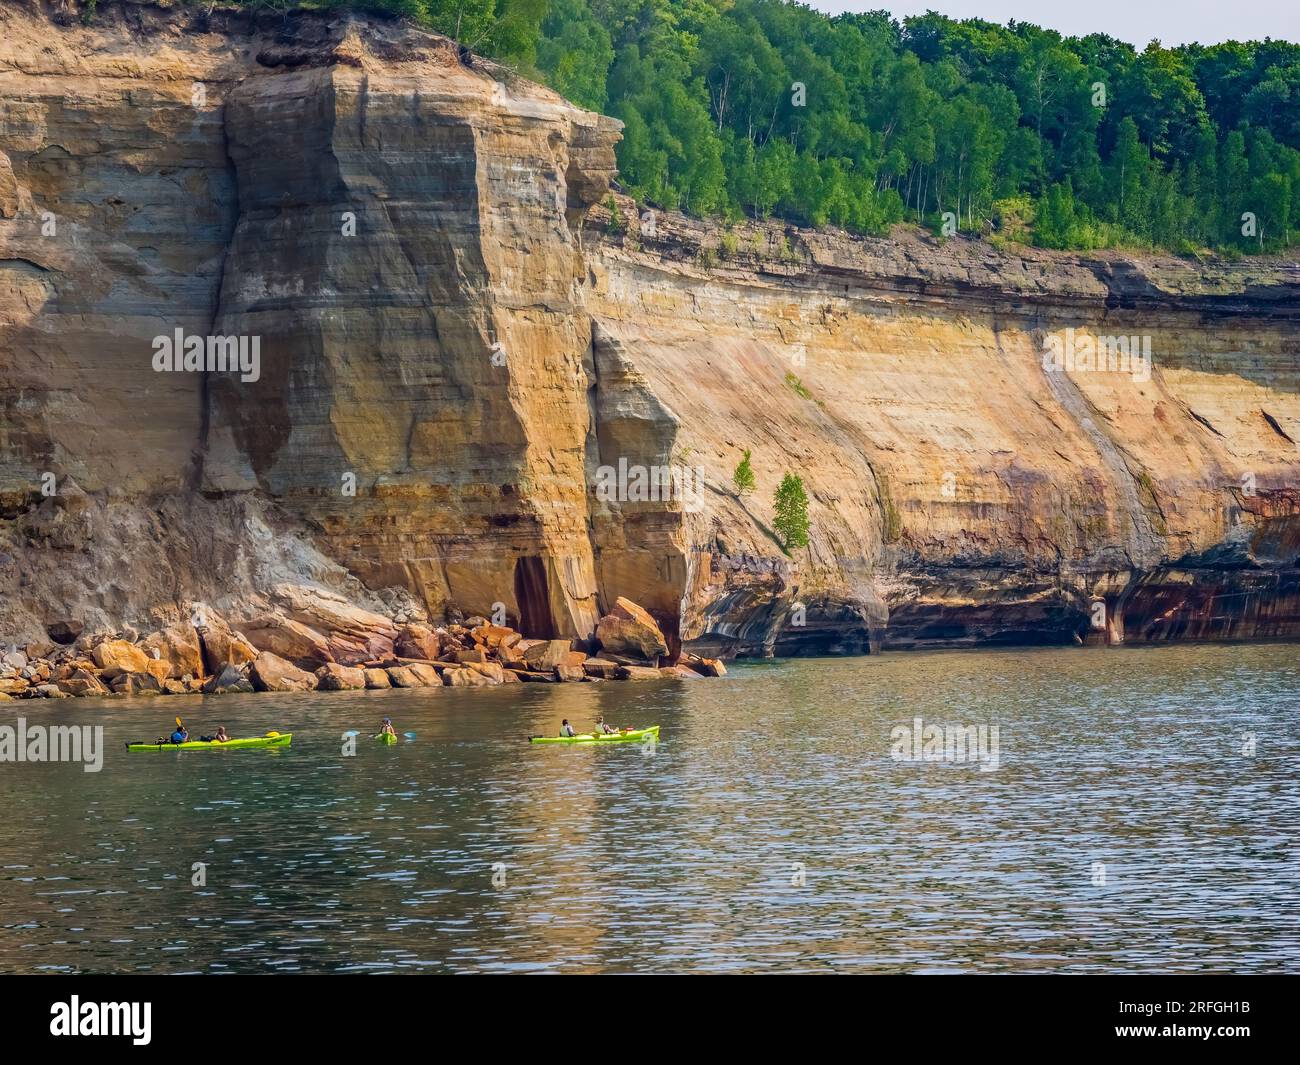 Kajakfahrer im Pictured Rocks National Lakeshore am Lake Superior auf der Oberen Halbinsel von Michigan, USA Stockfoto